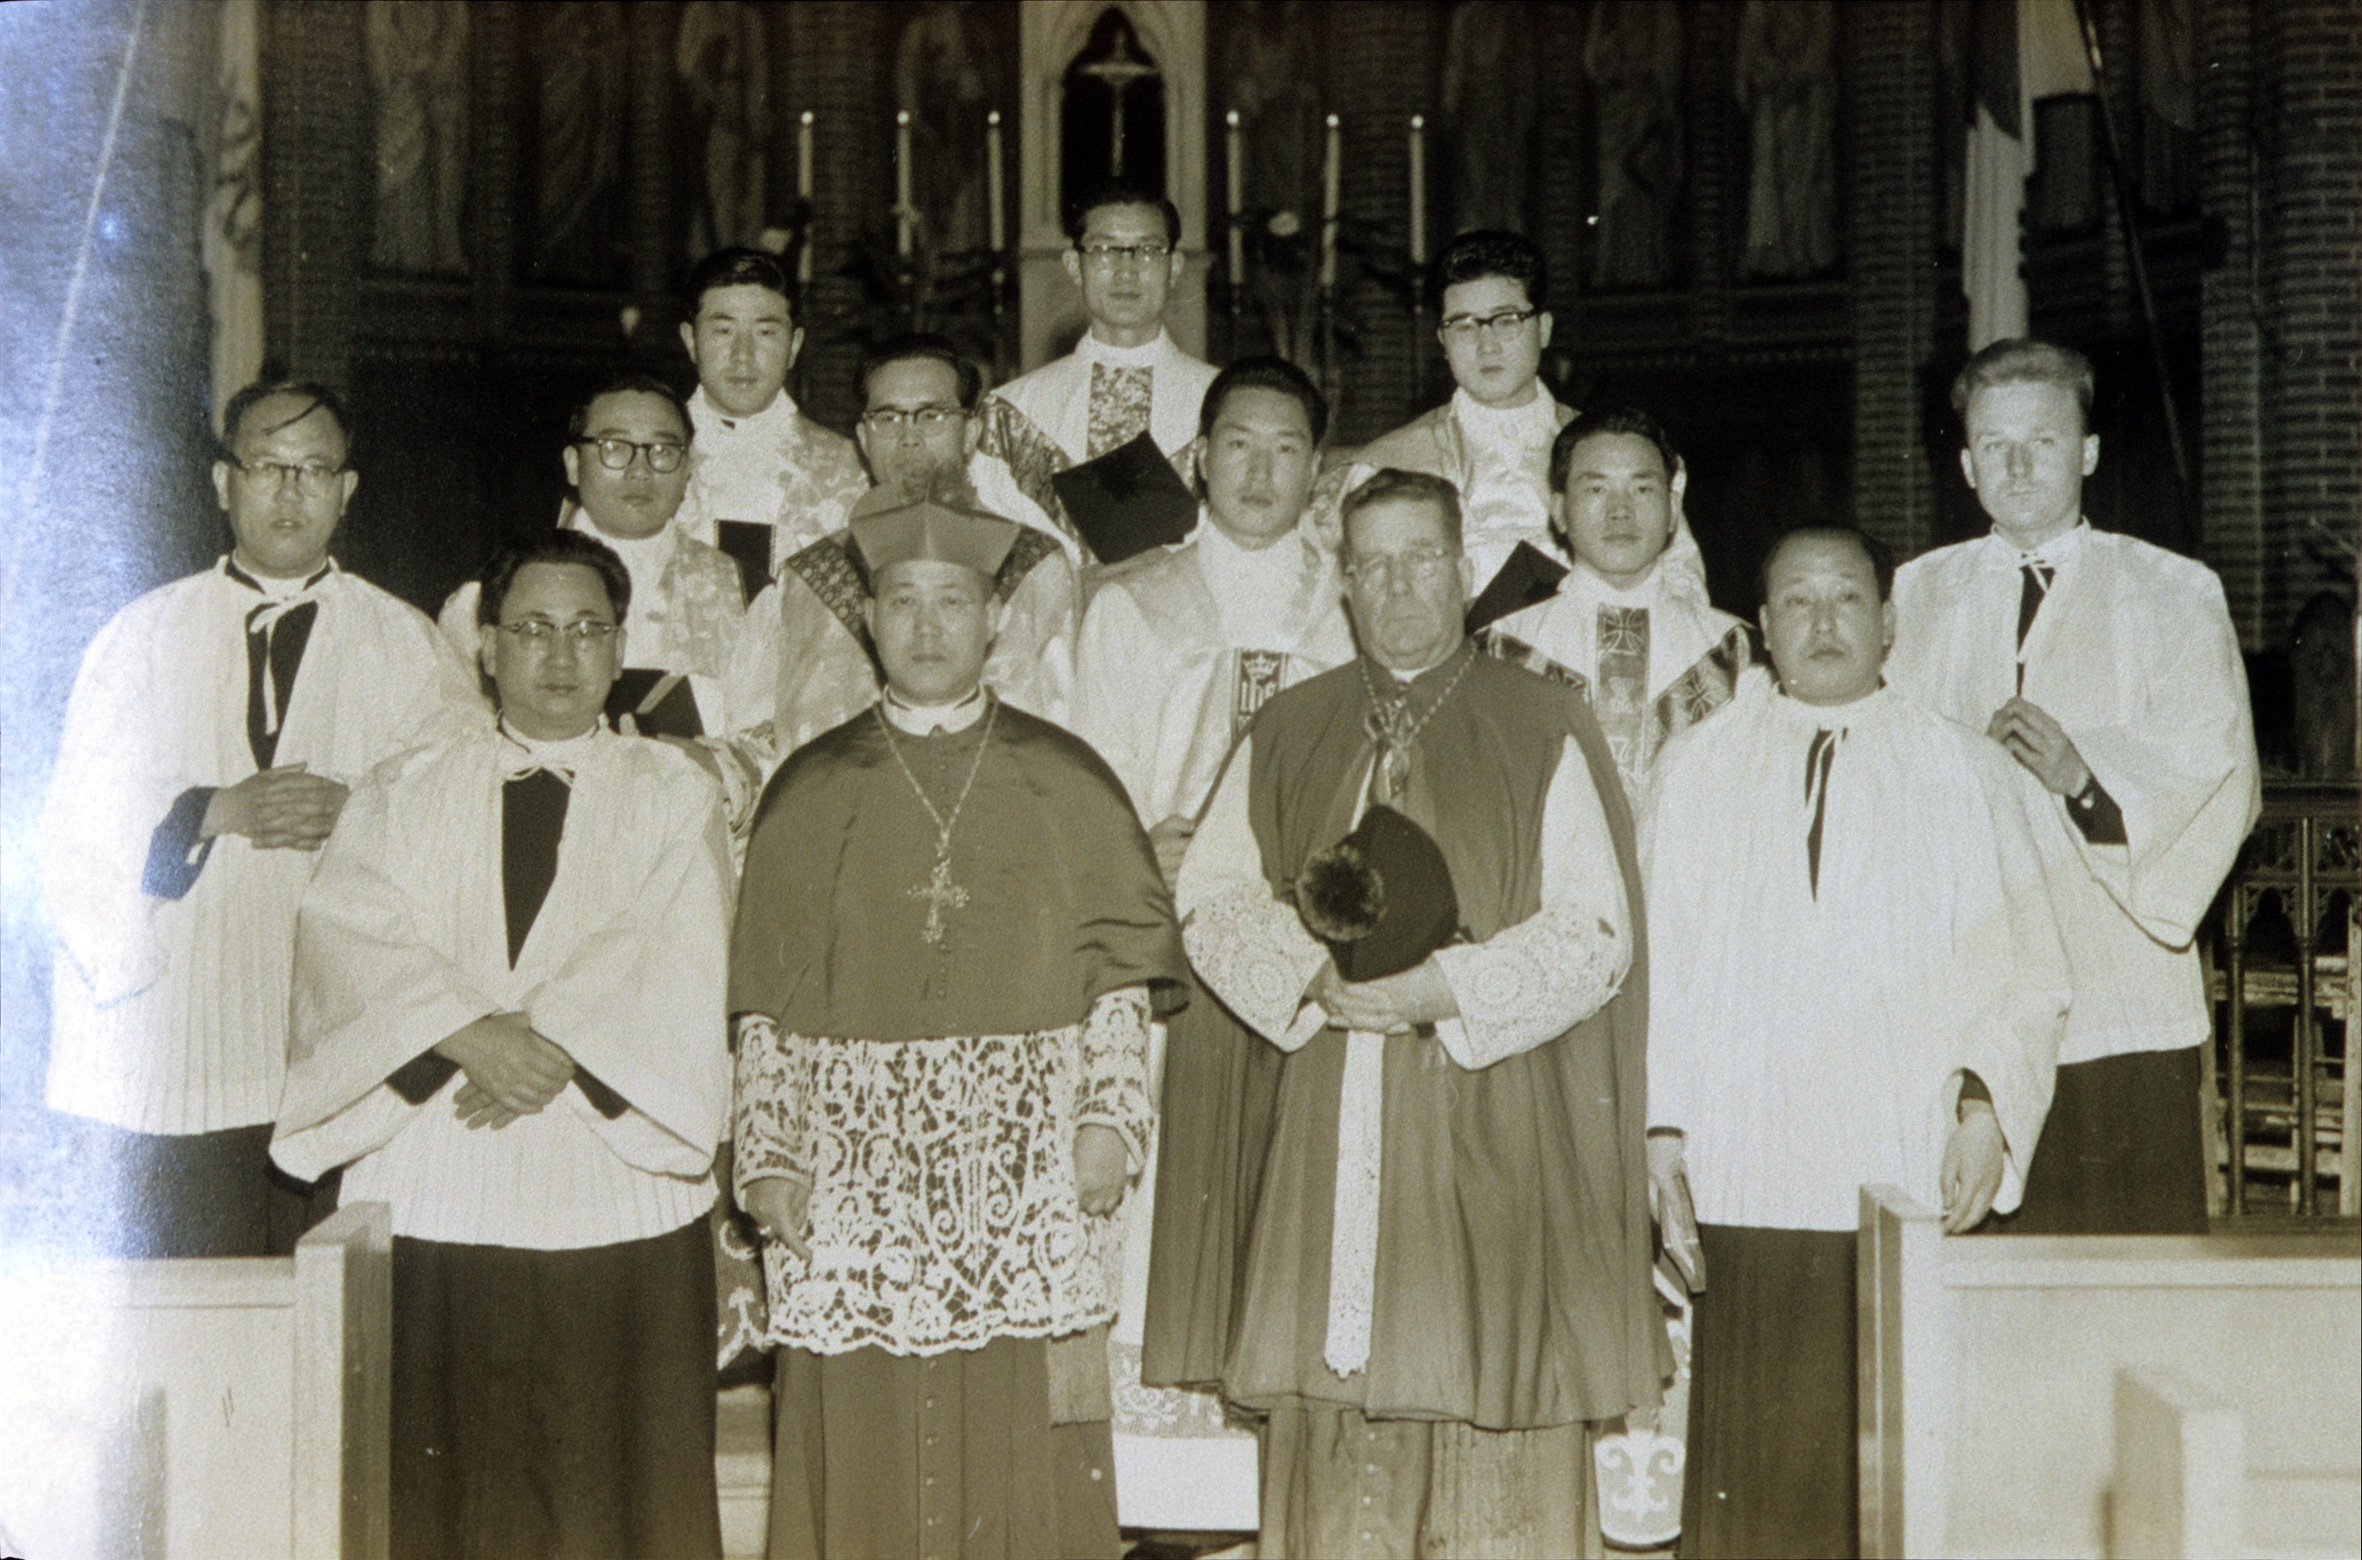 가톨릭대학(1959~1992) (1)의 관련된 이미지 입니다.